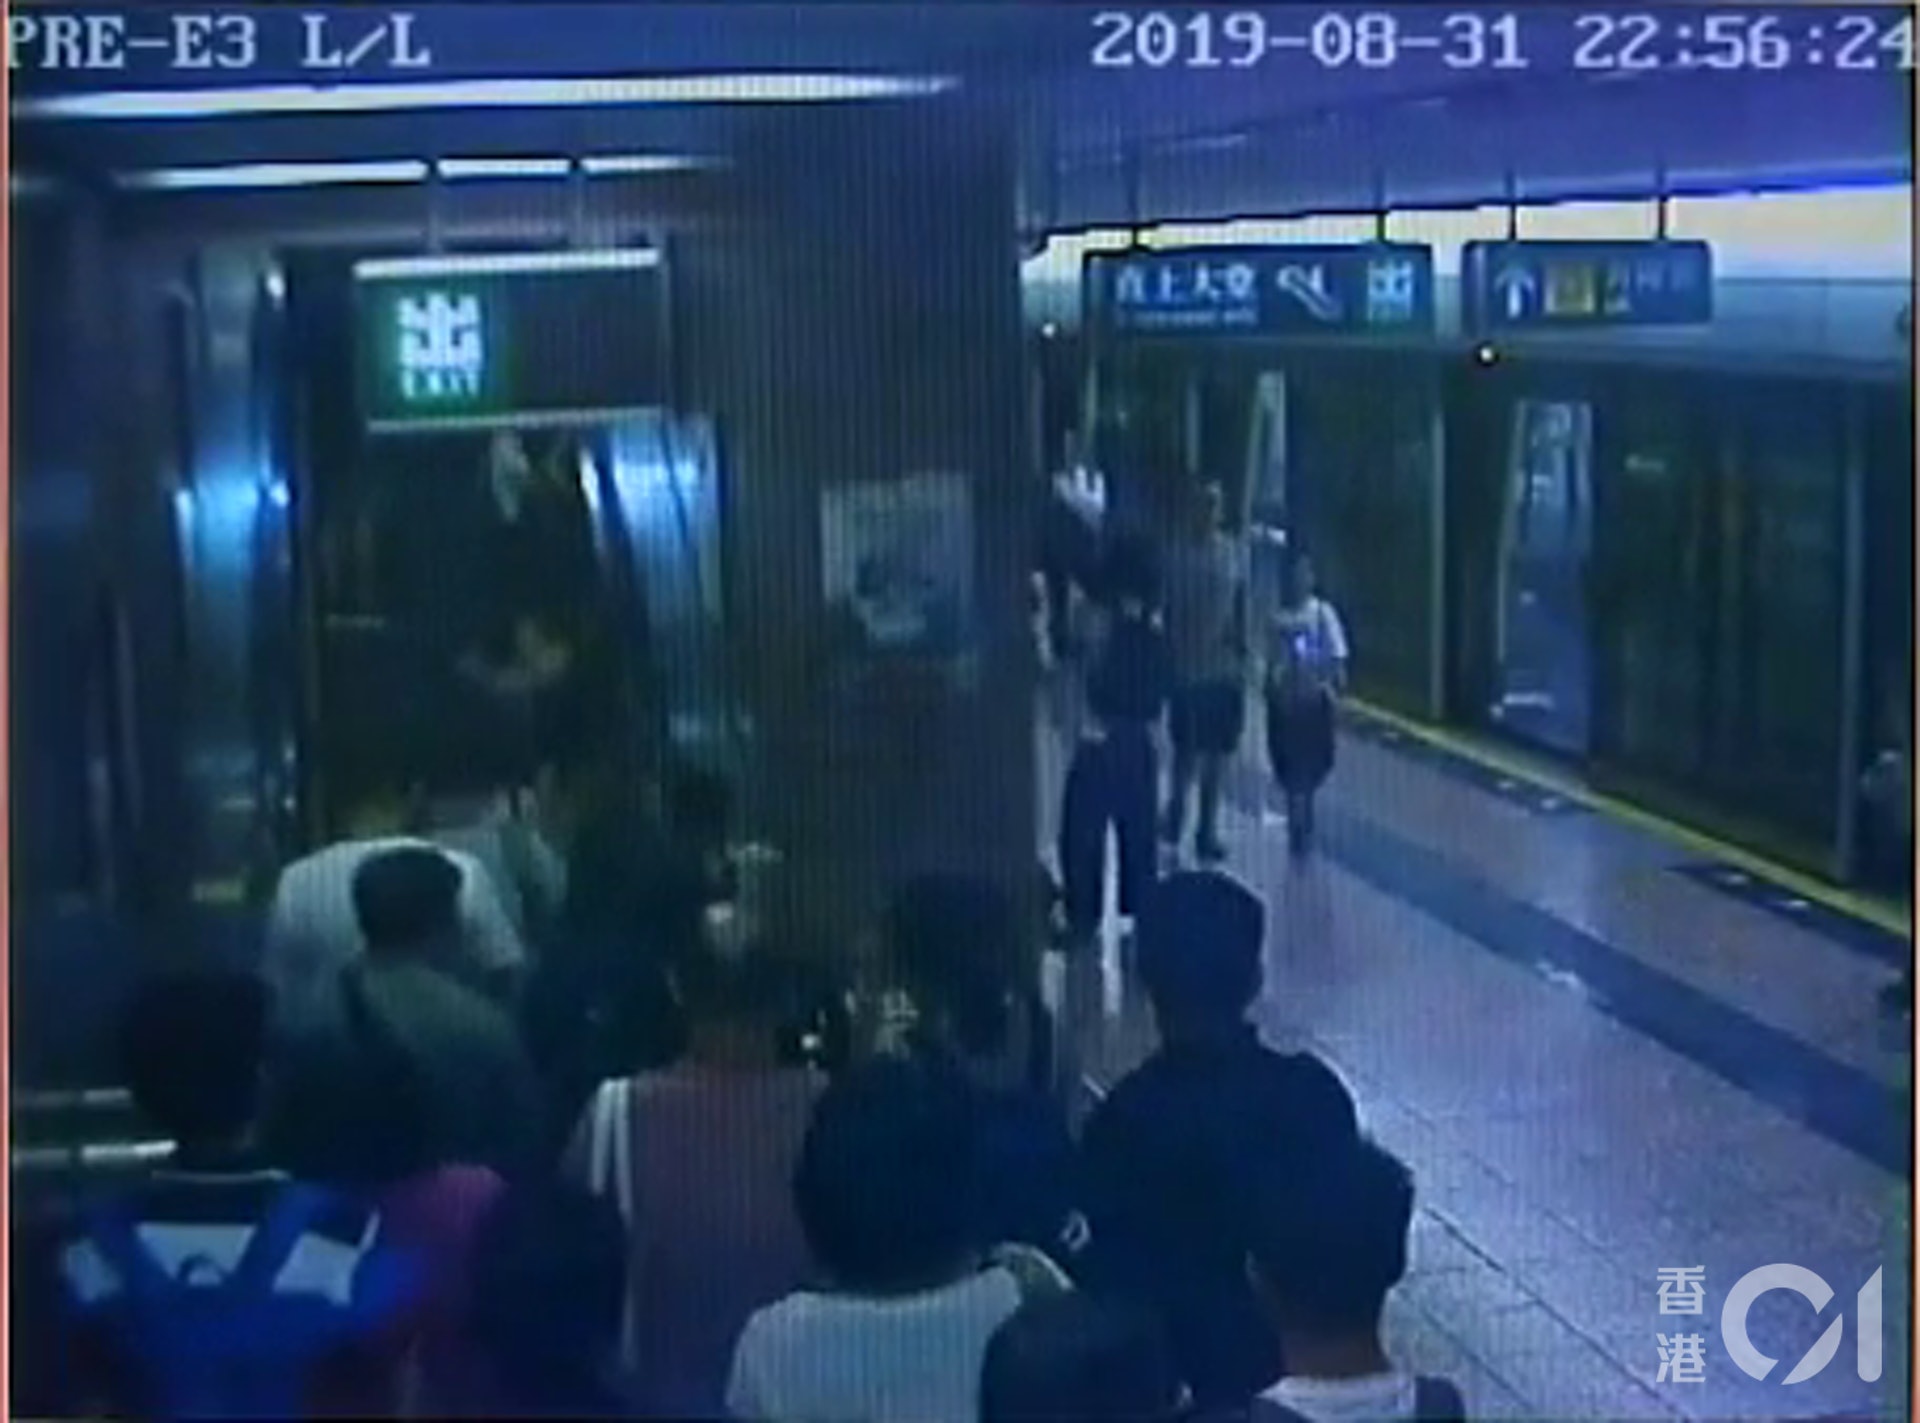 片段可見，當時突然有大批人奔跑逃避。(太子站CCTV截圖)